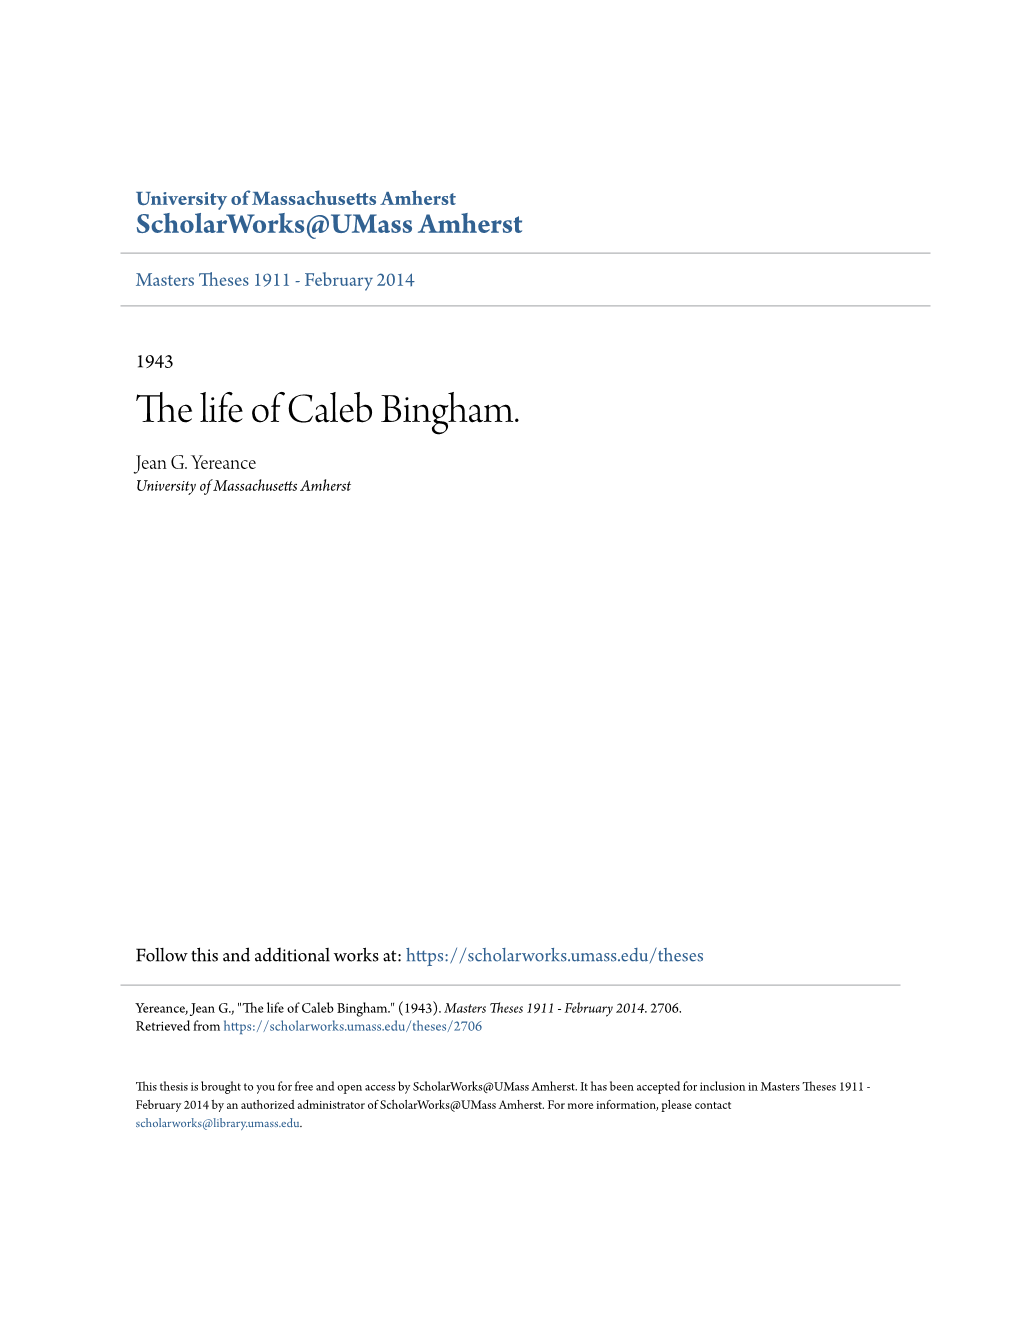 The Life of Caleb Bingham. Jean G